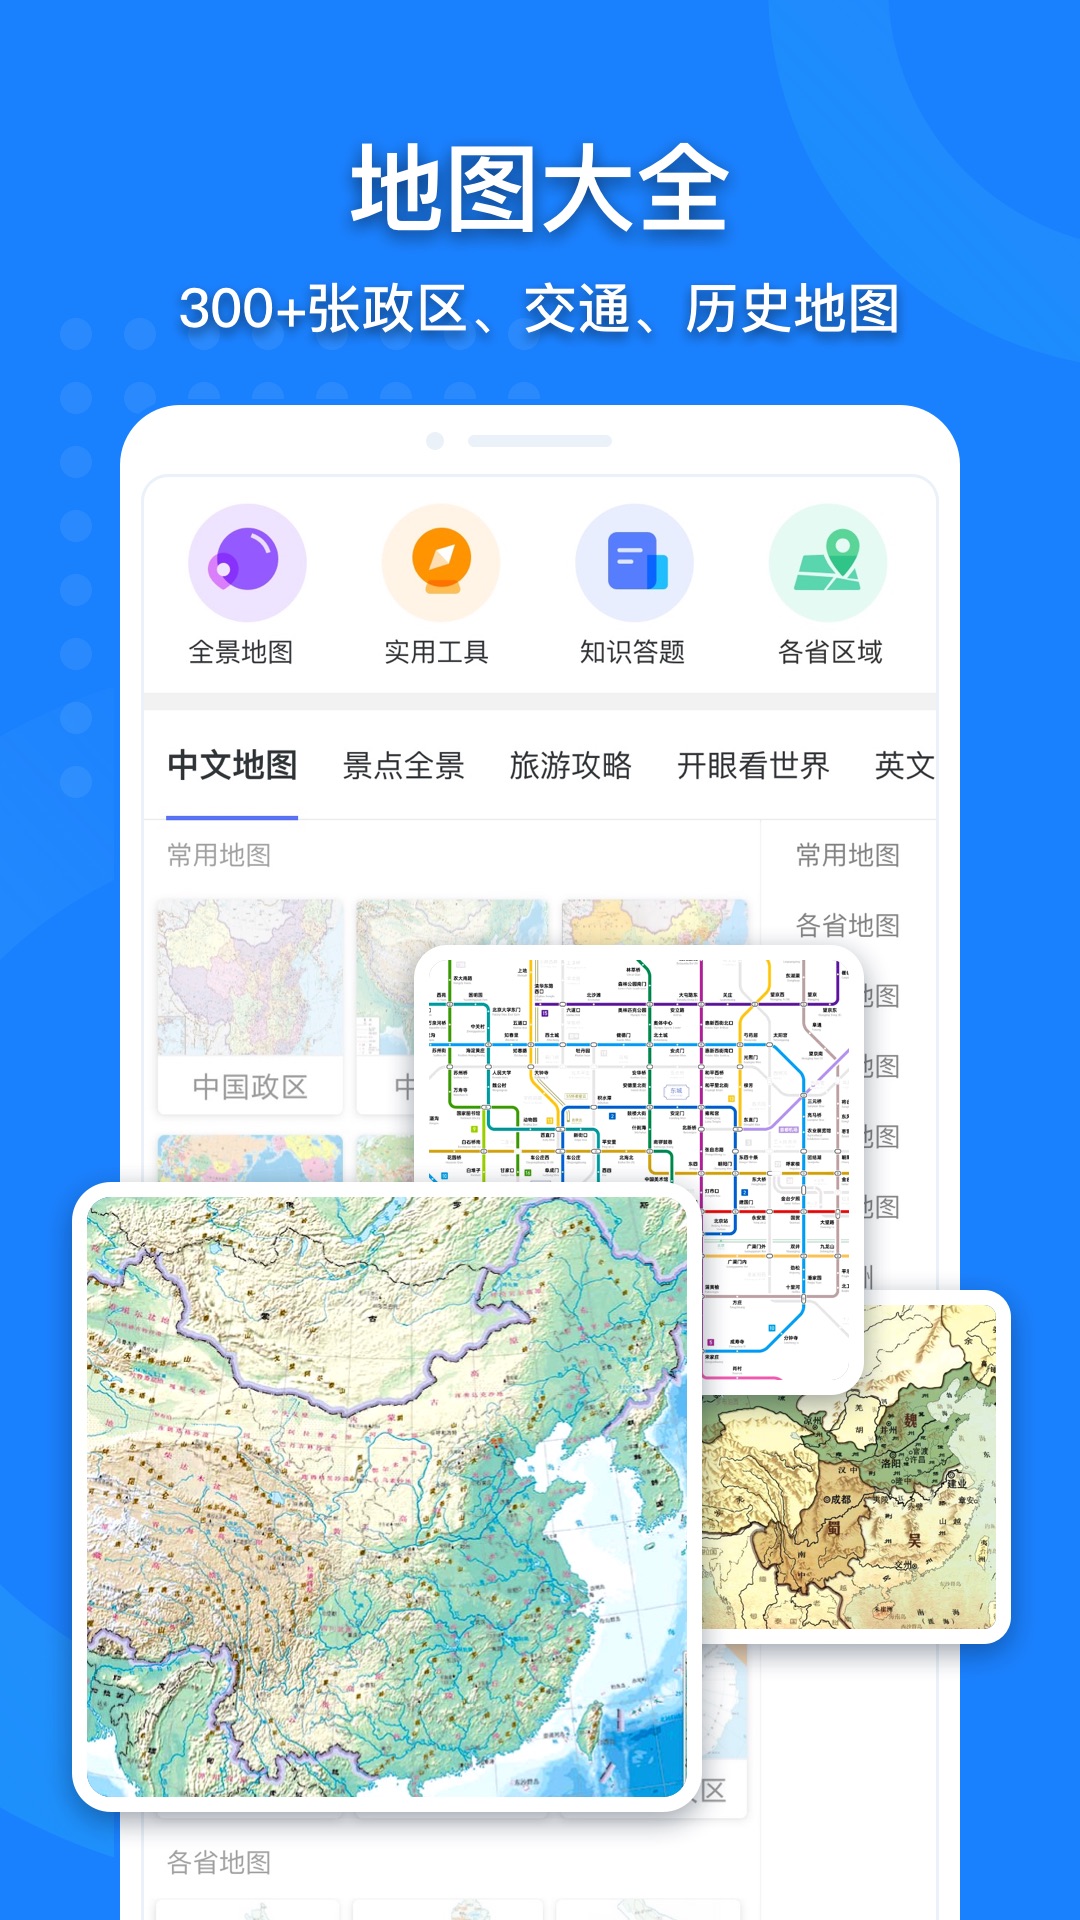 中国地图高清版大图截图2